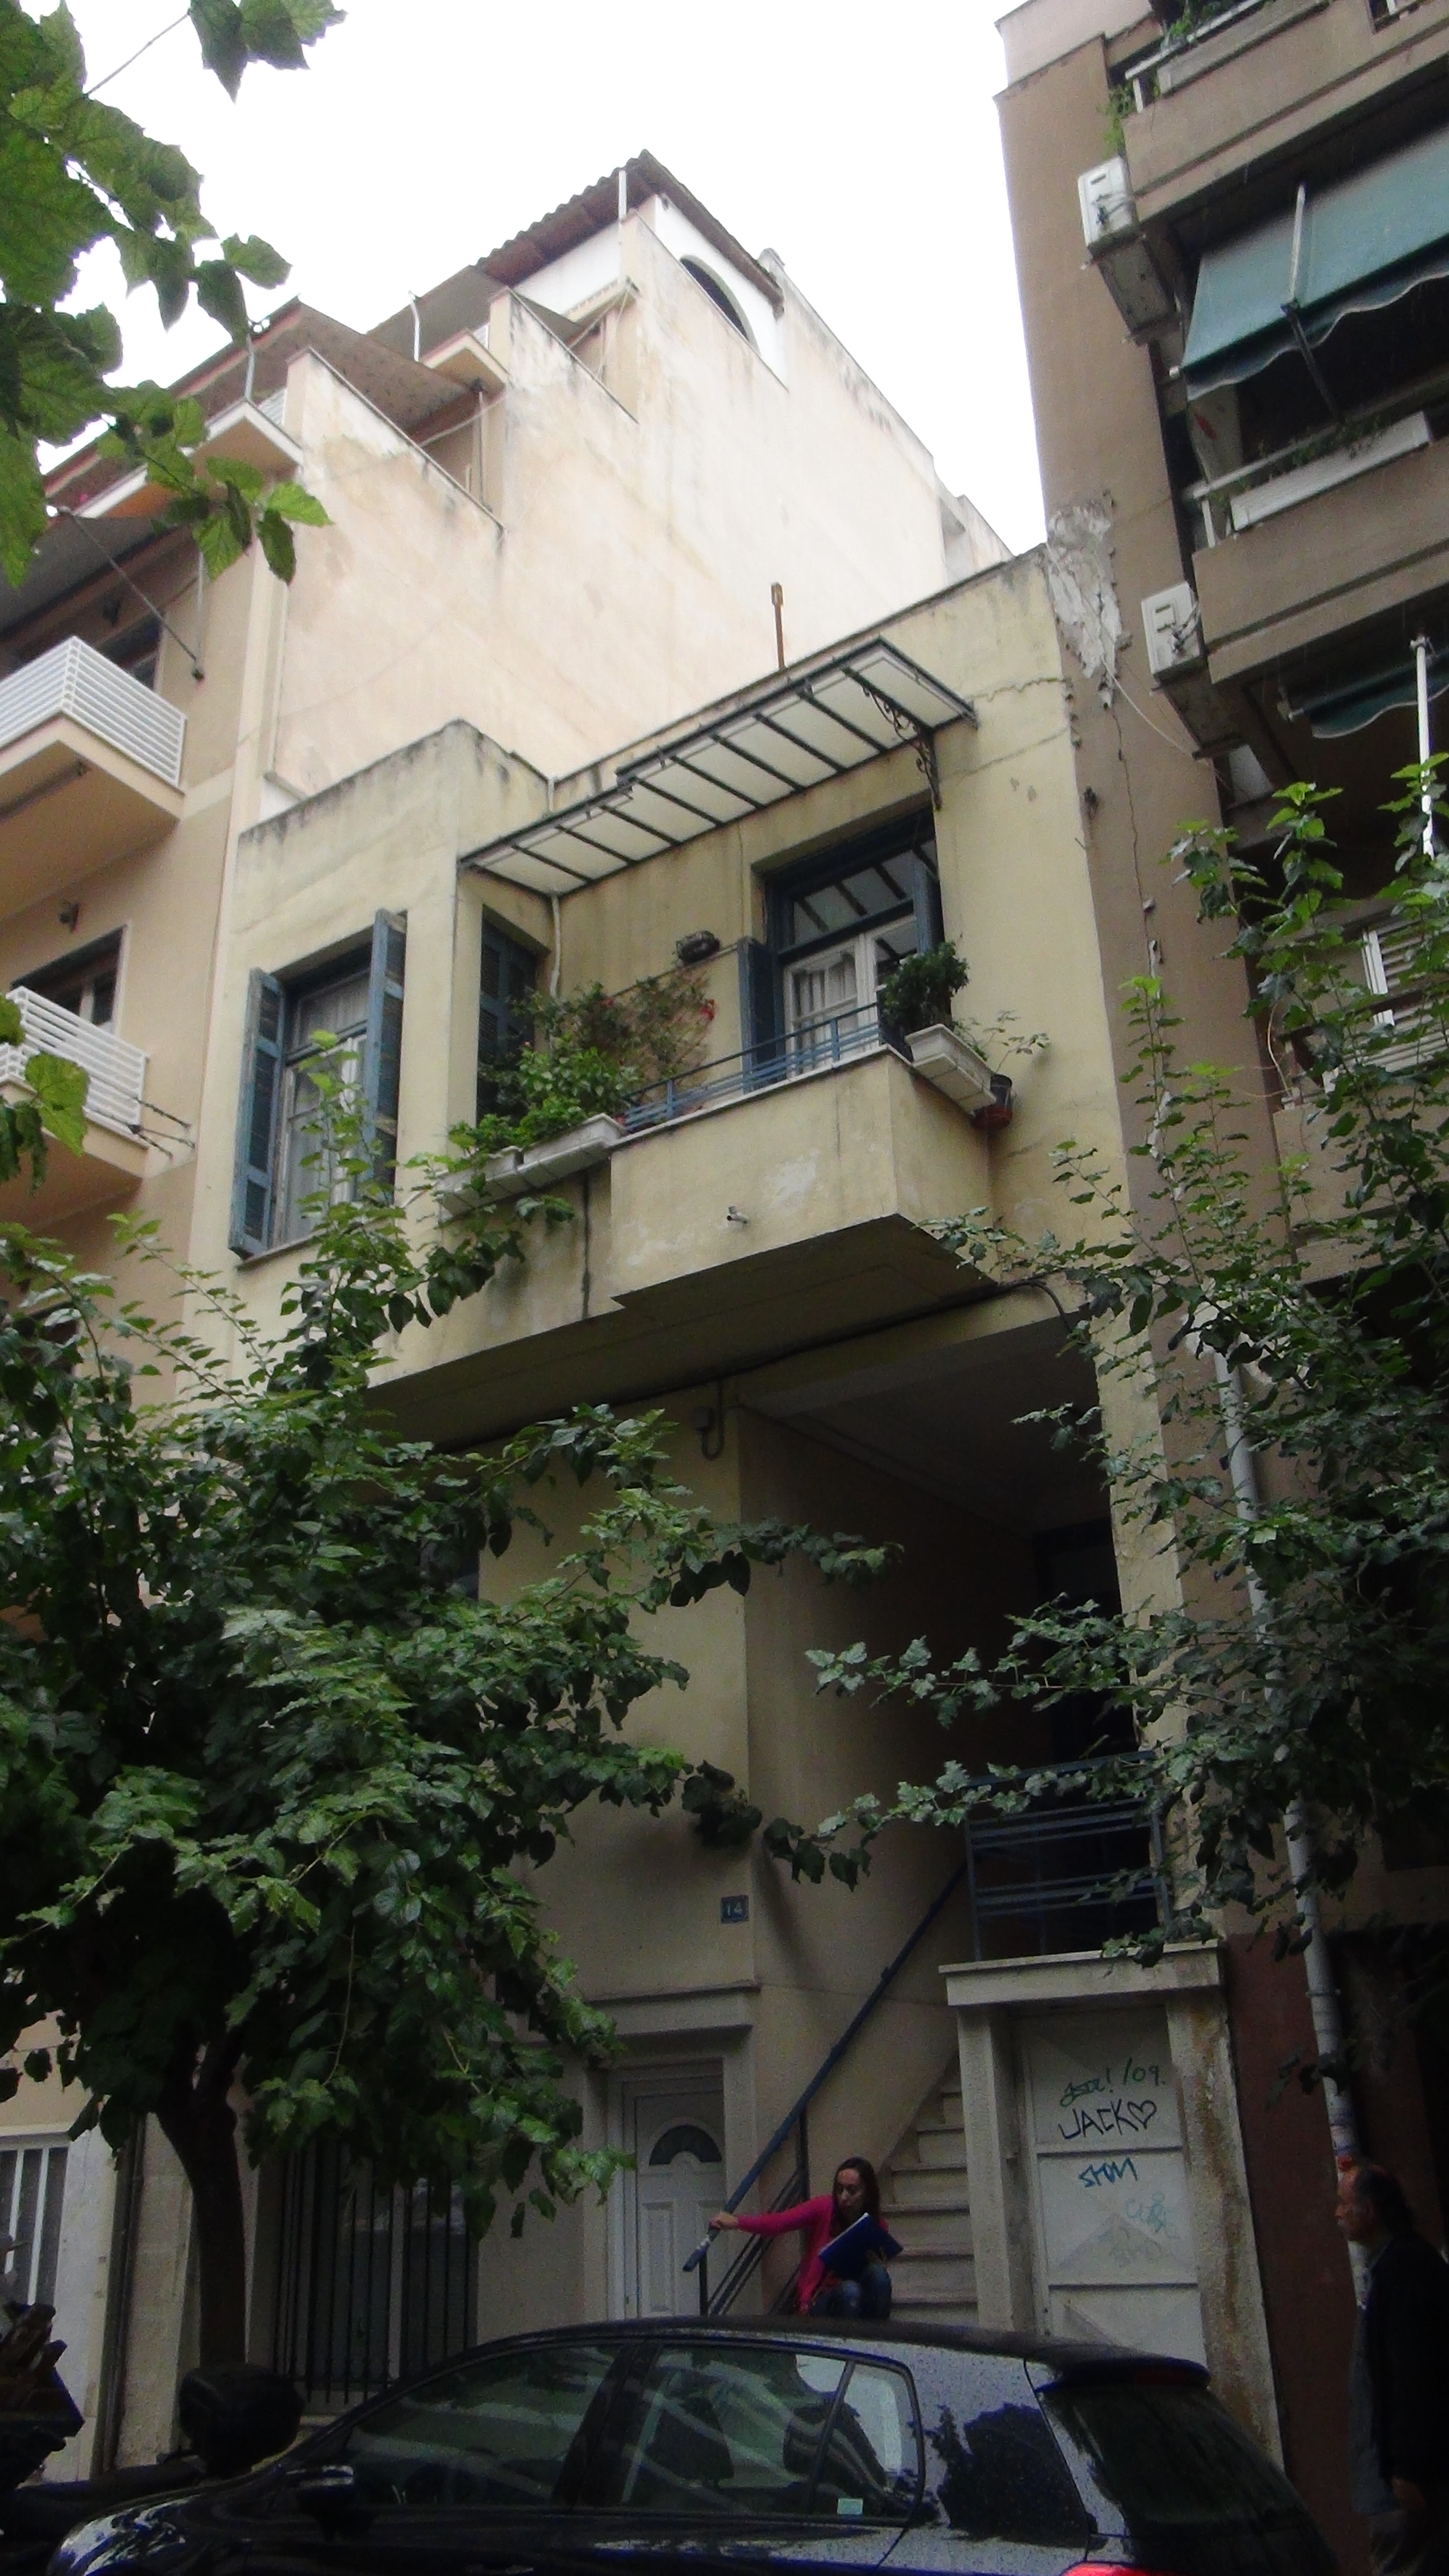 View of main facade